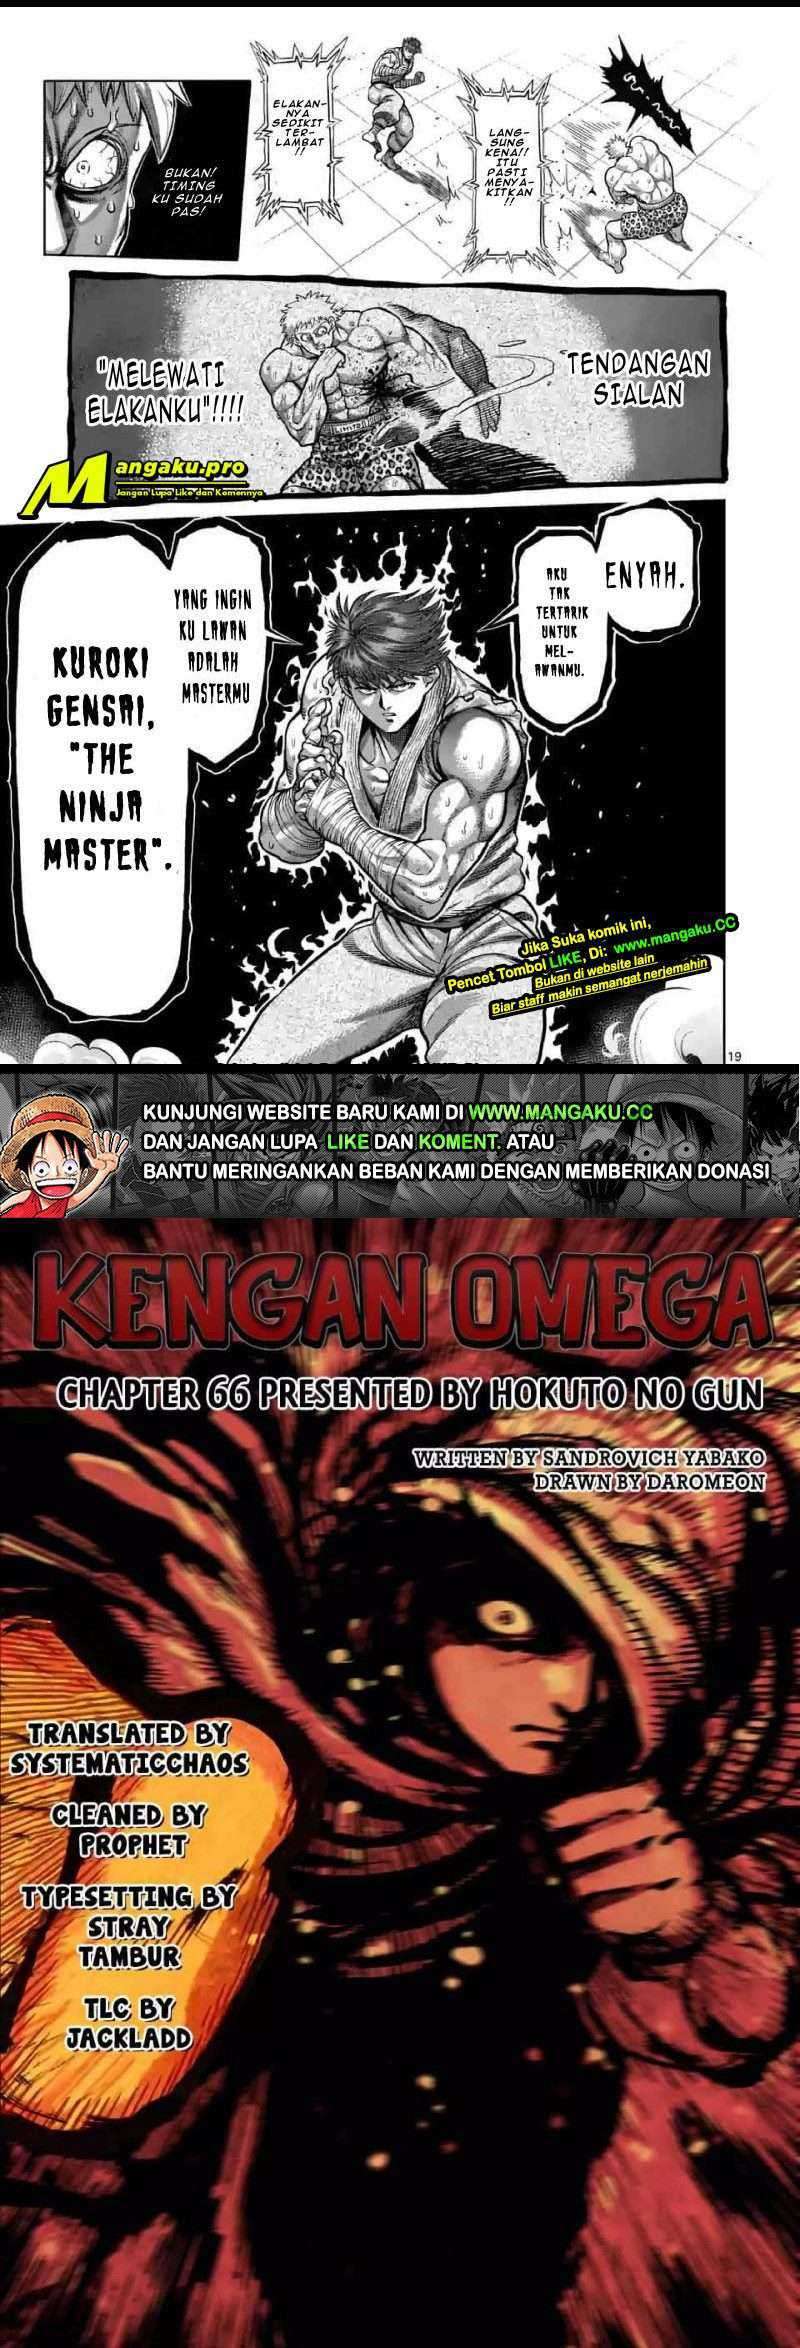 Kengan Omega Chapter 66